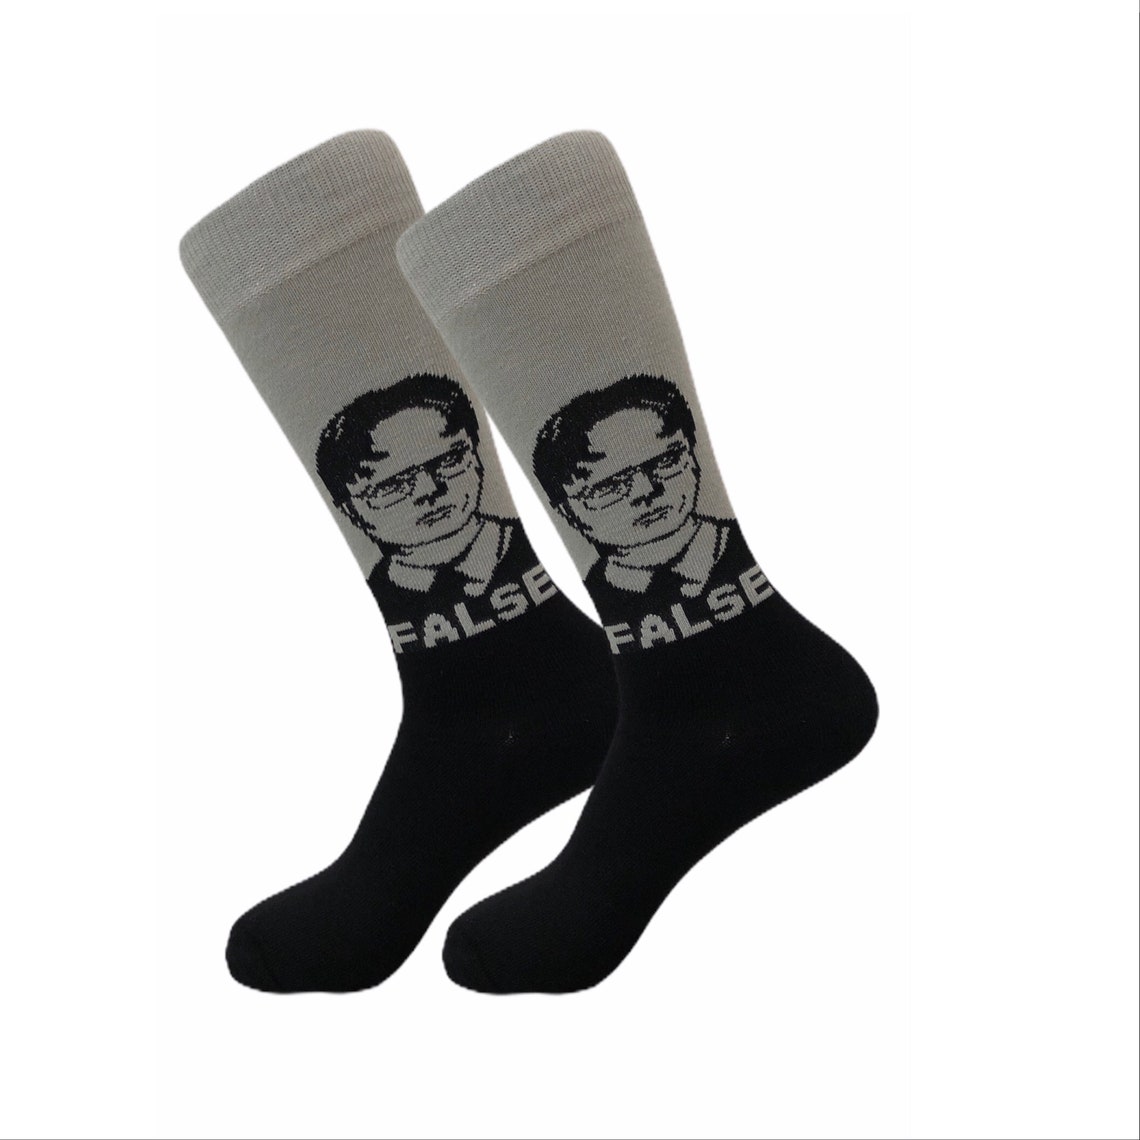 Dwight Schrute Socks